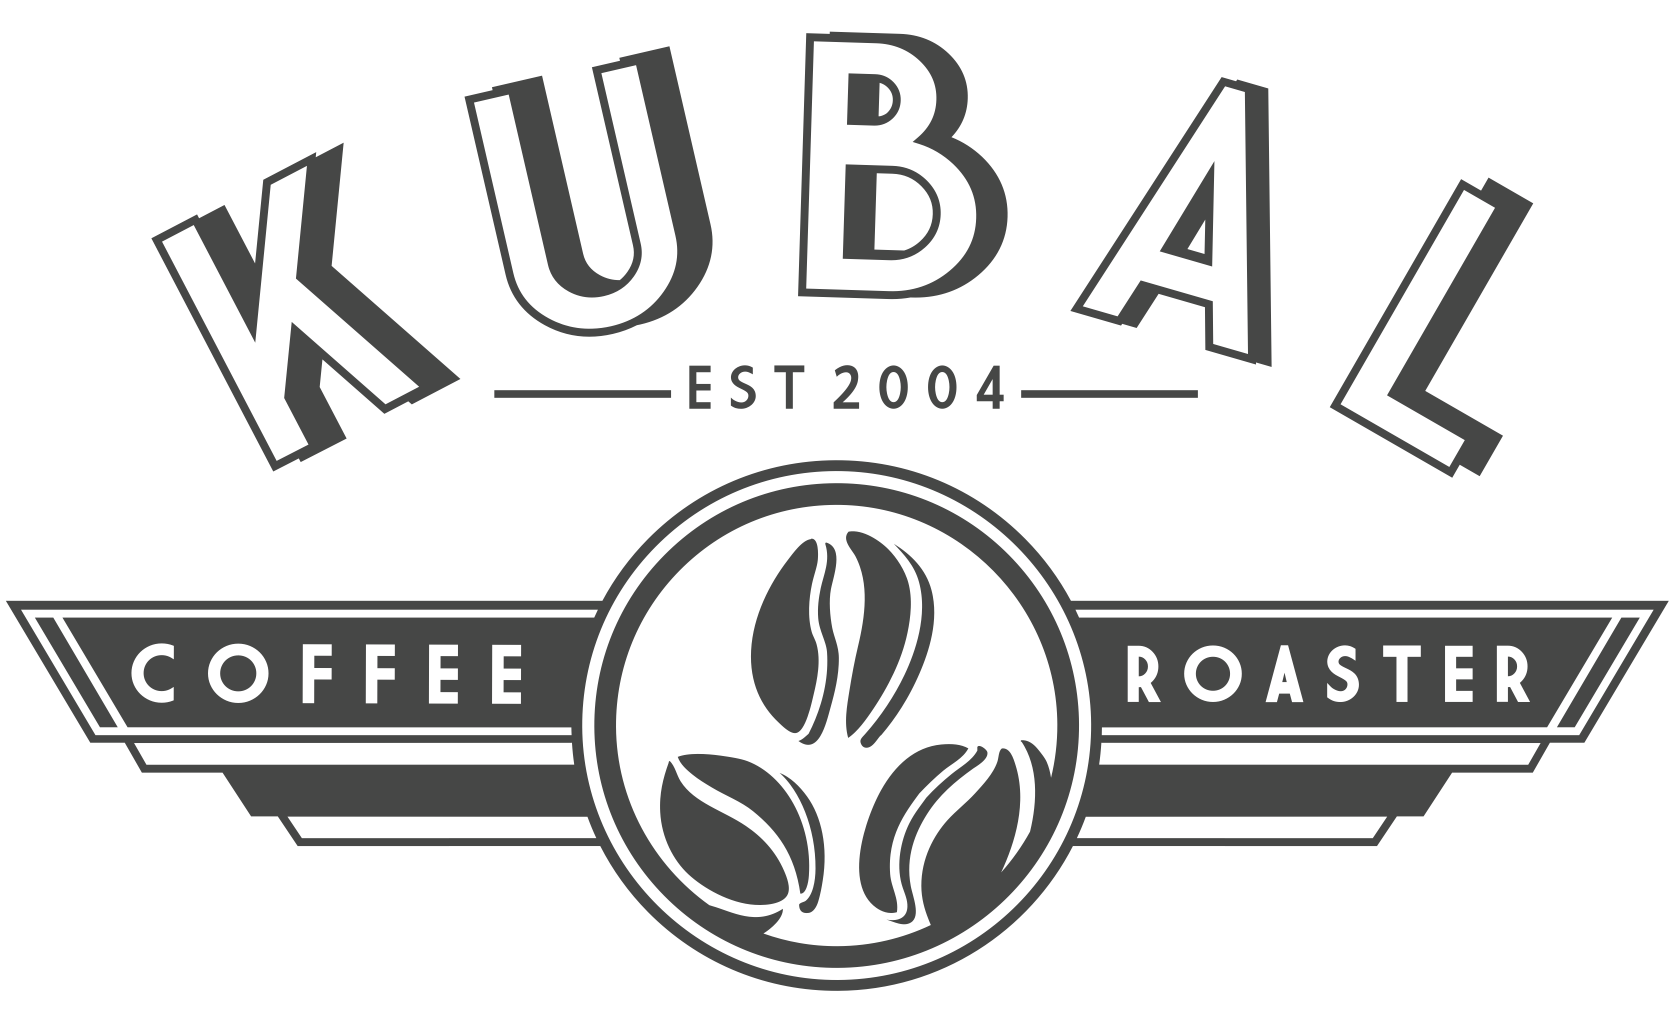 cafe kubal established in 2004